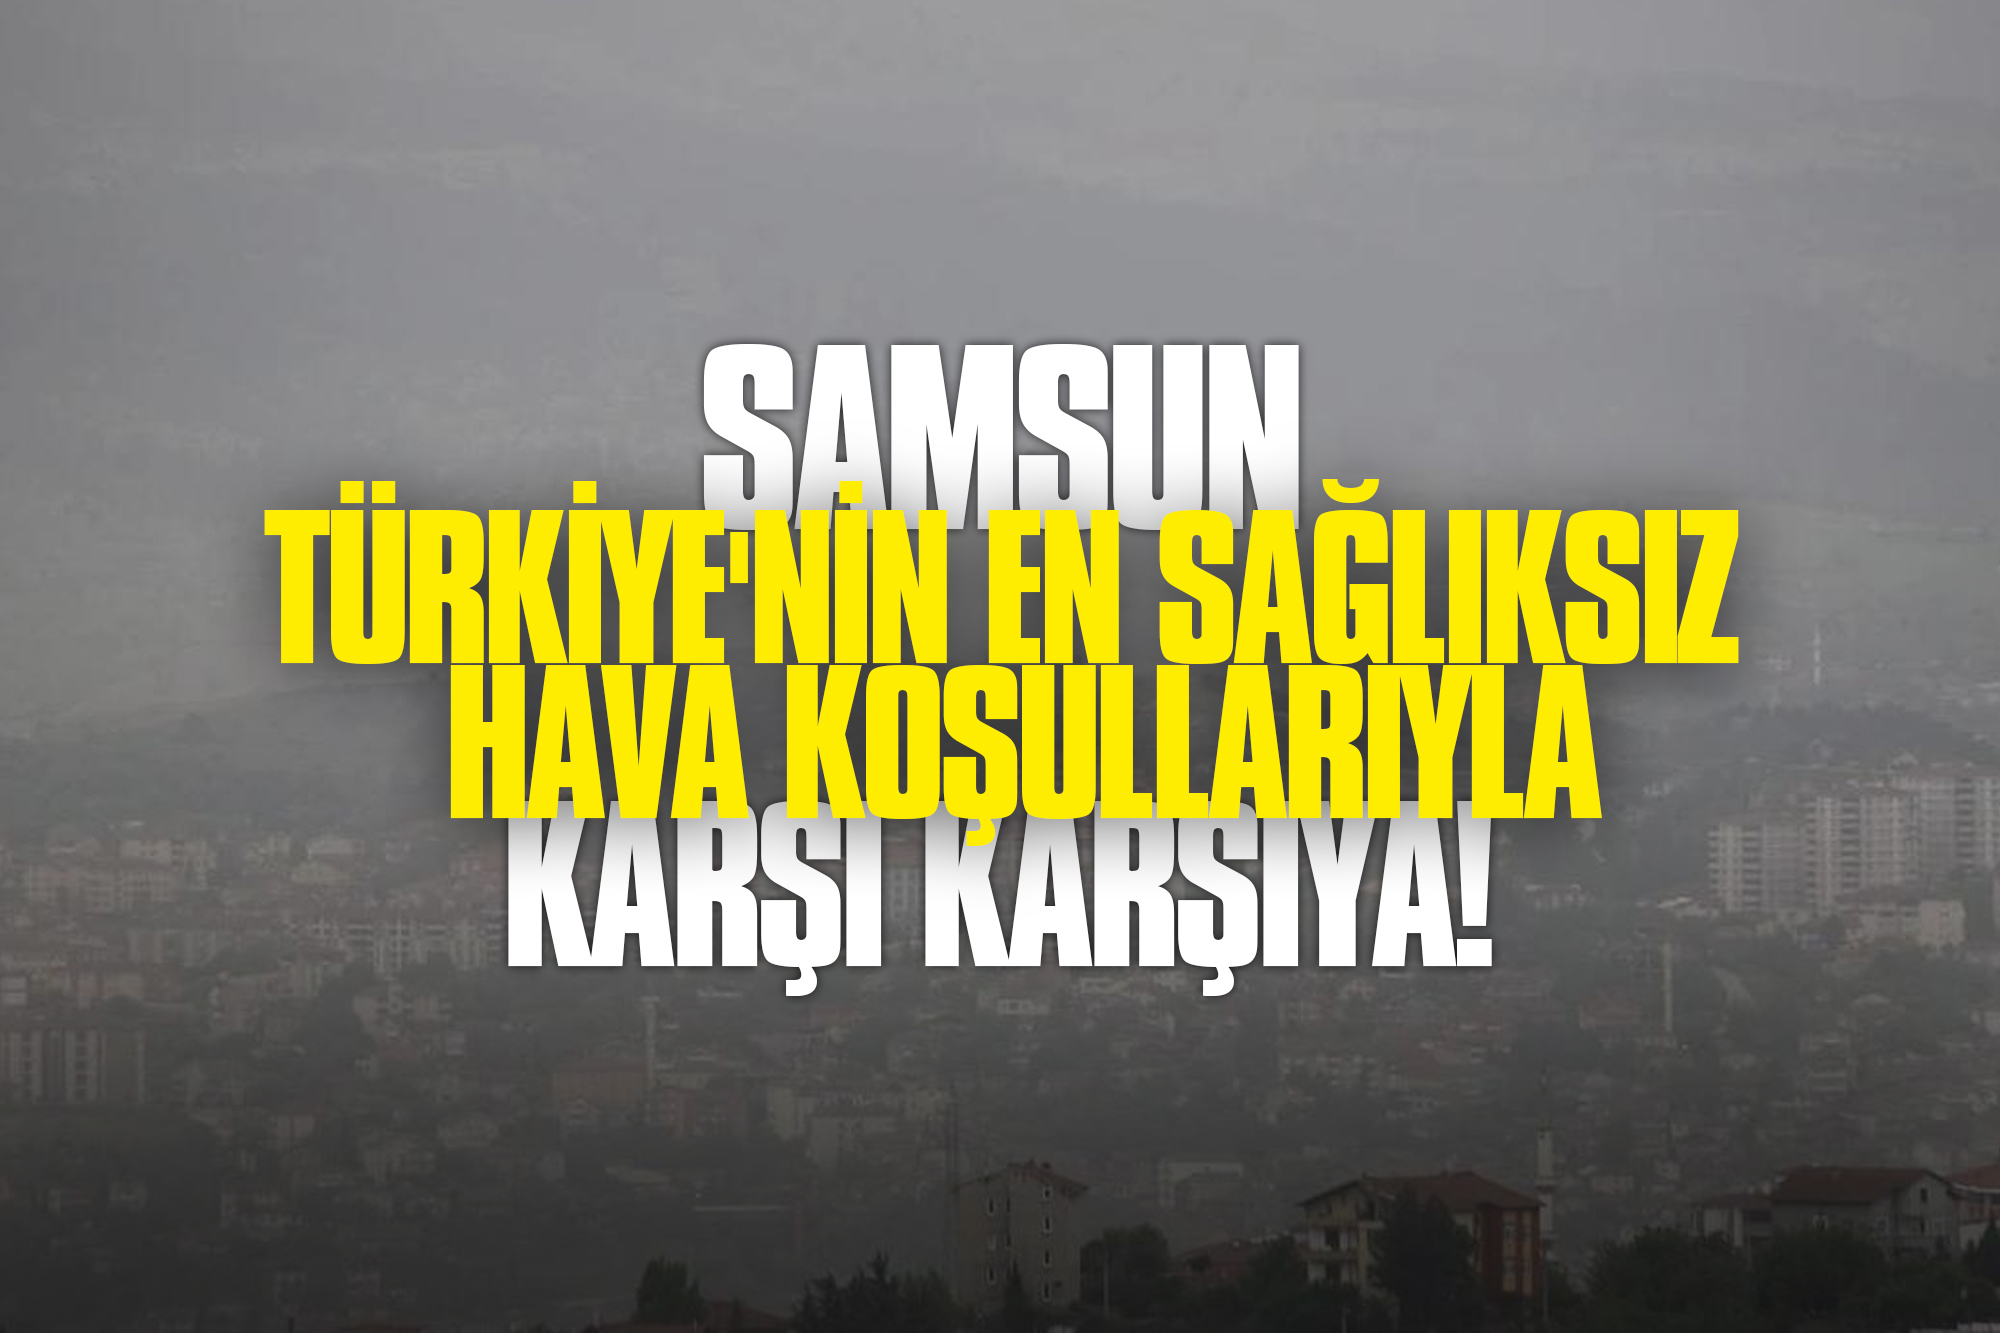 Samsun'da Çöl Tozları Alarmı: Türkiye'nin En Sağlıksız Hava Koşullarıyla Karşı Karşıya!